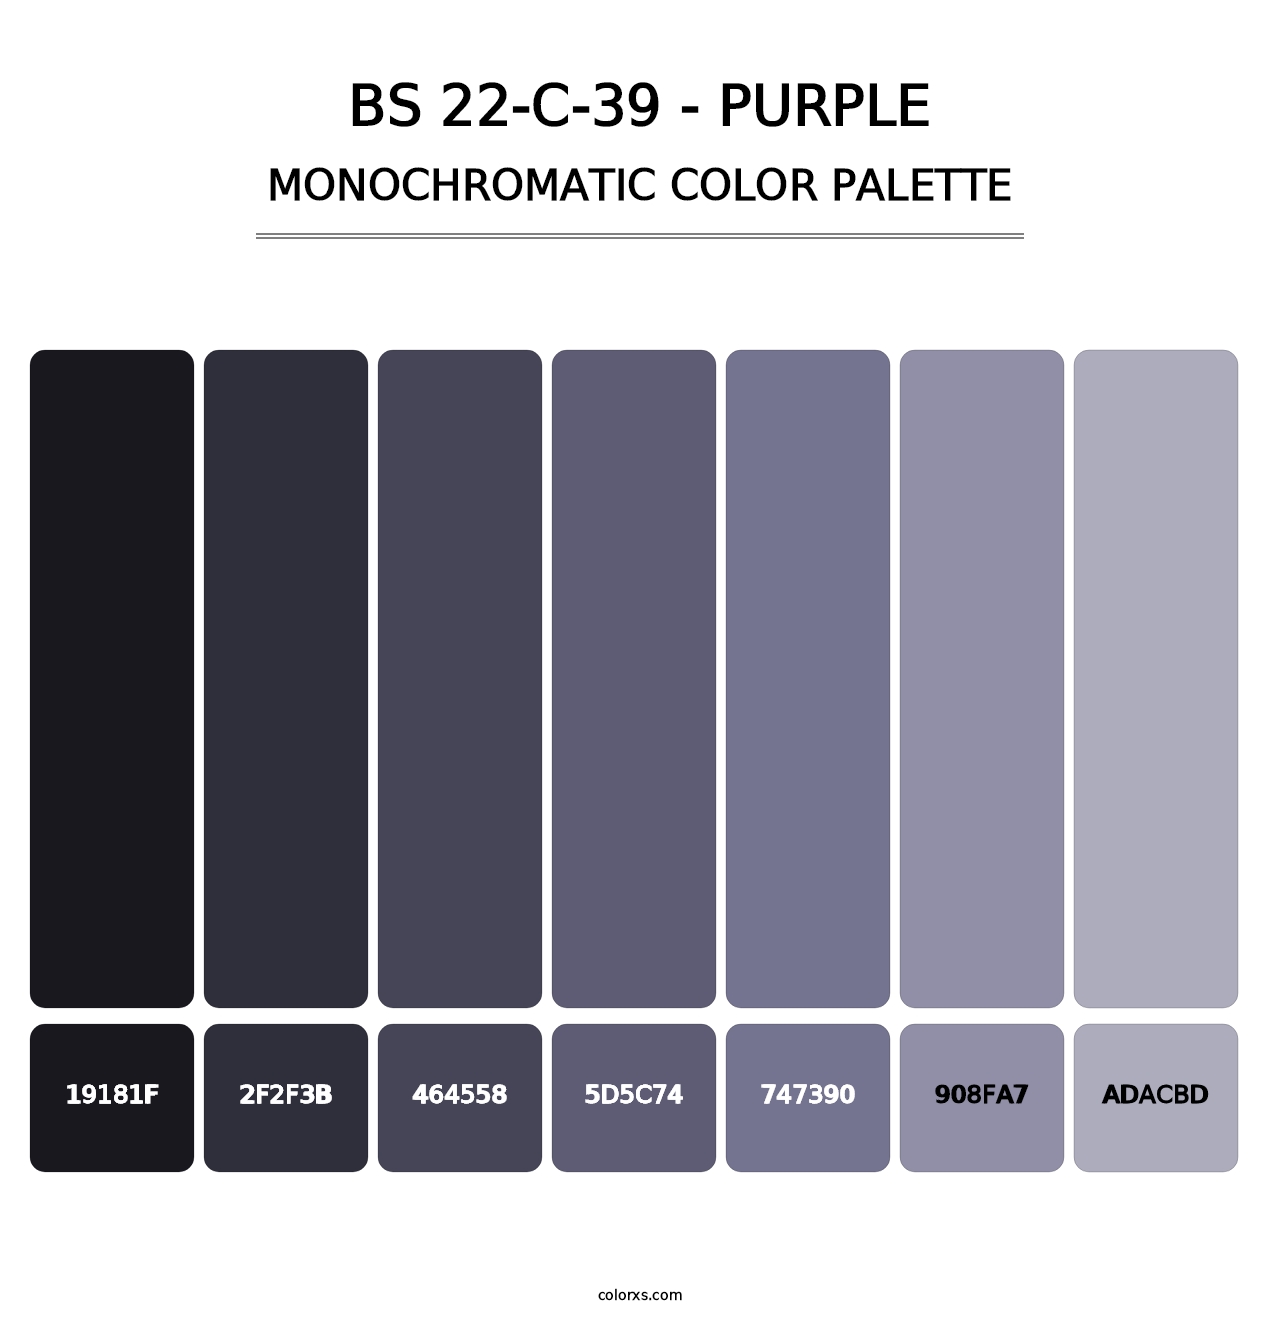 BS 22-C-39 - Purple - Monochromatic Color Palette